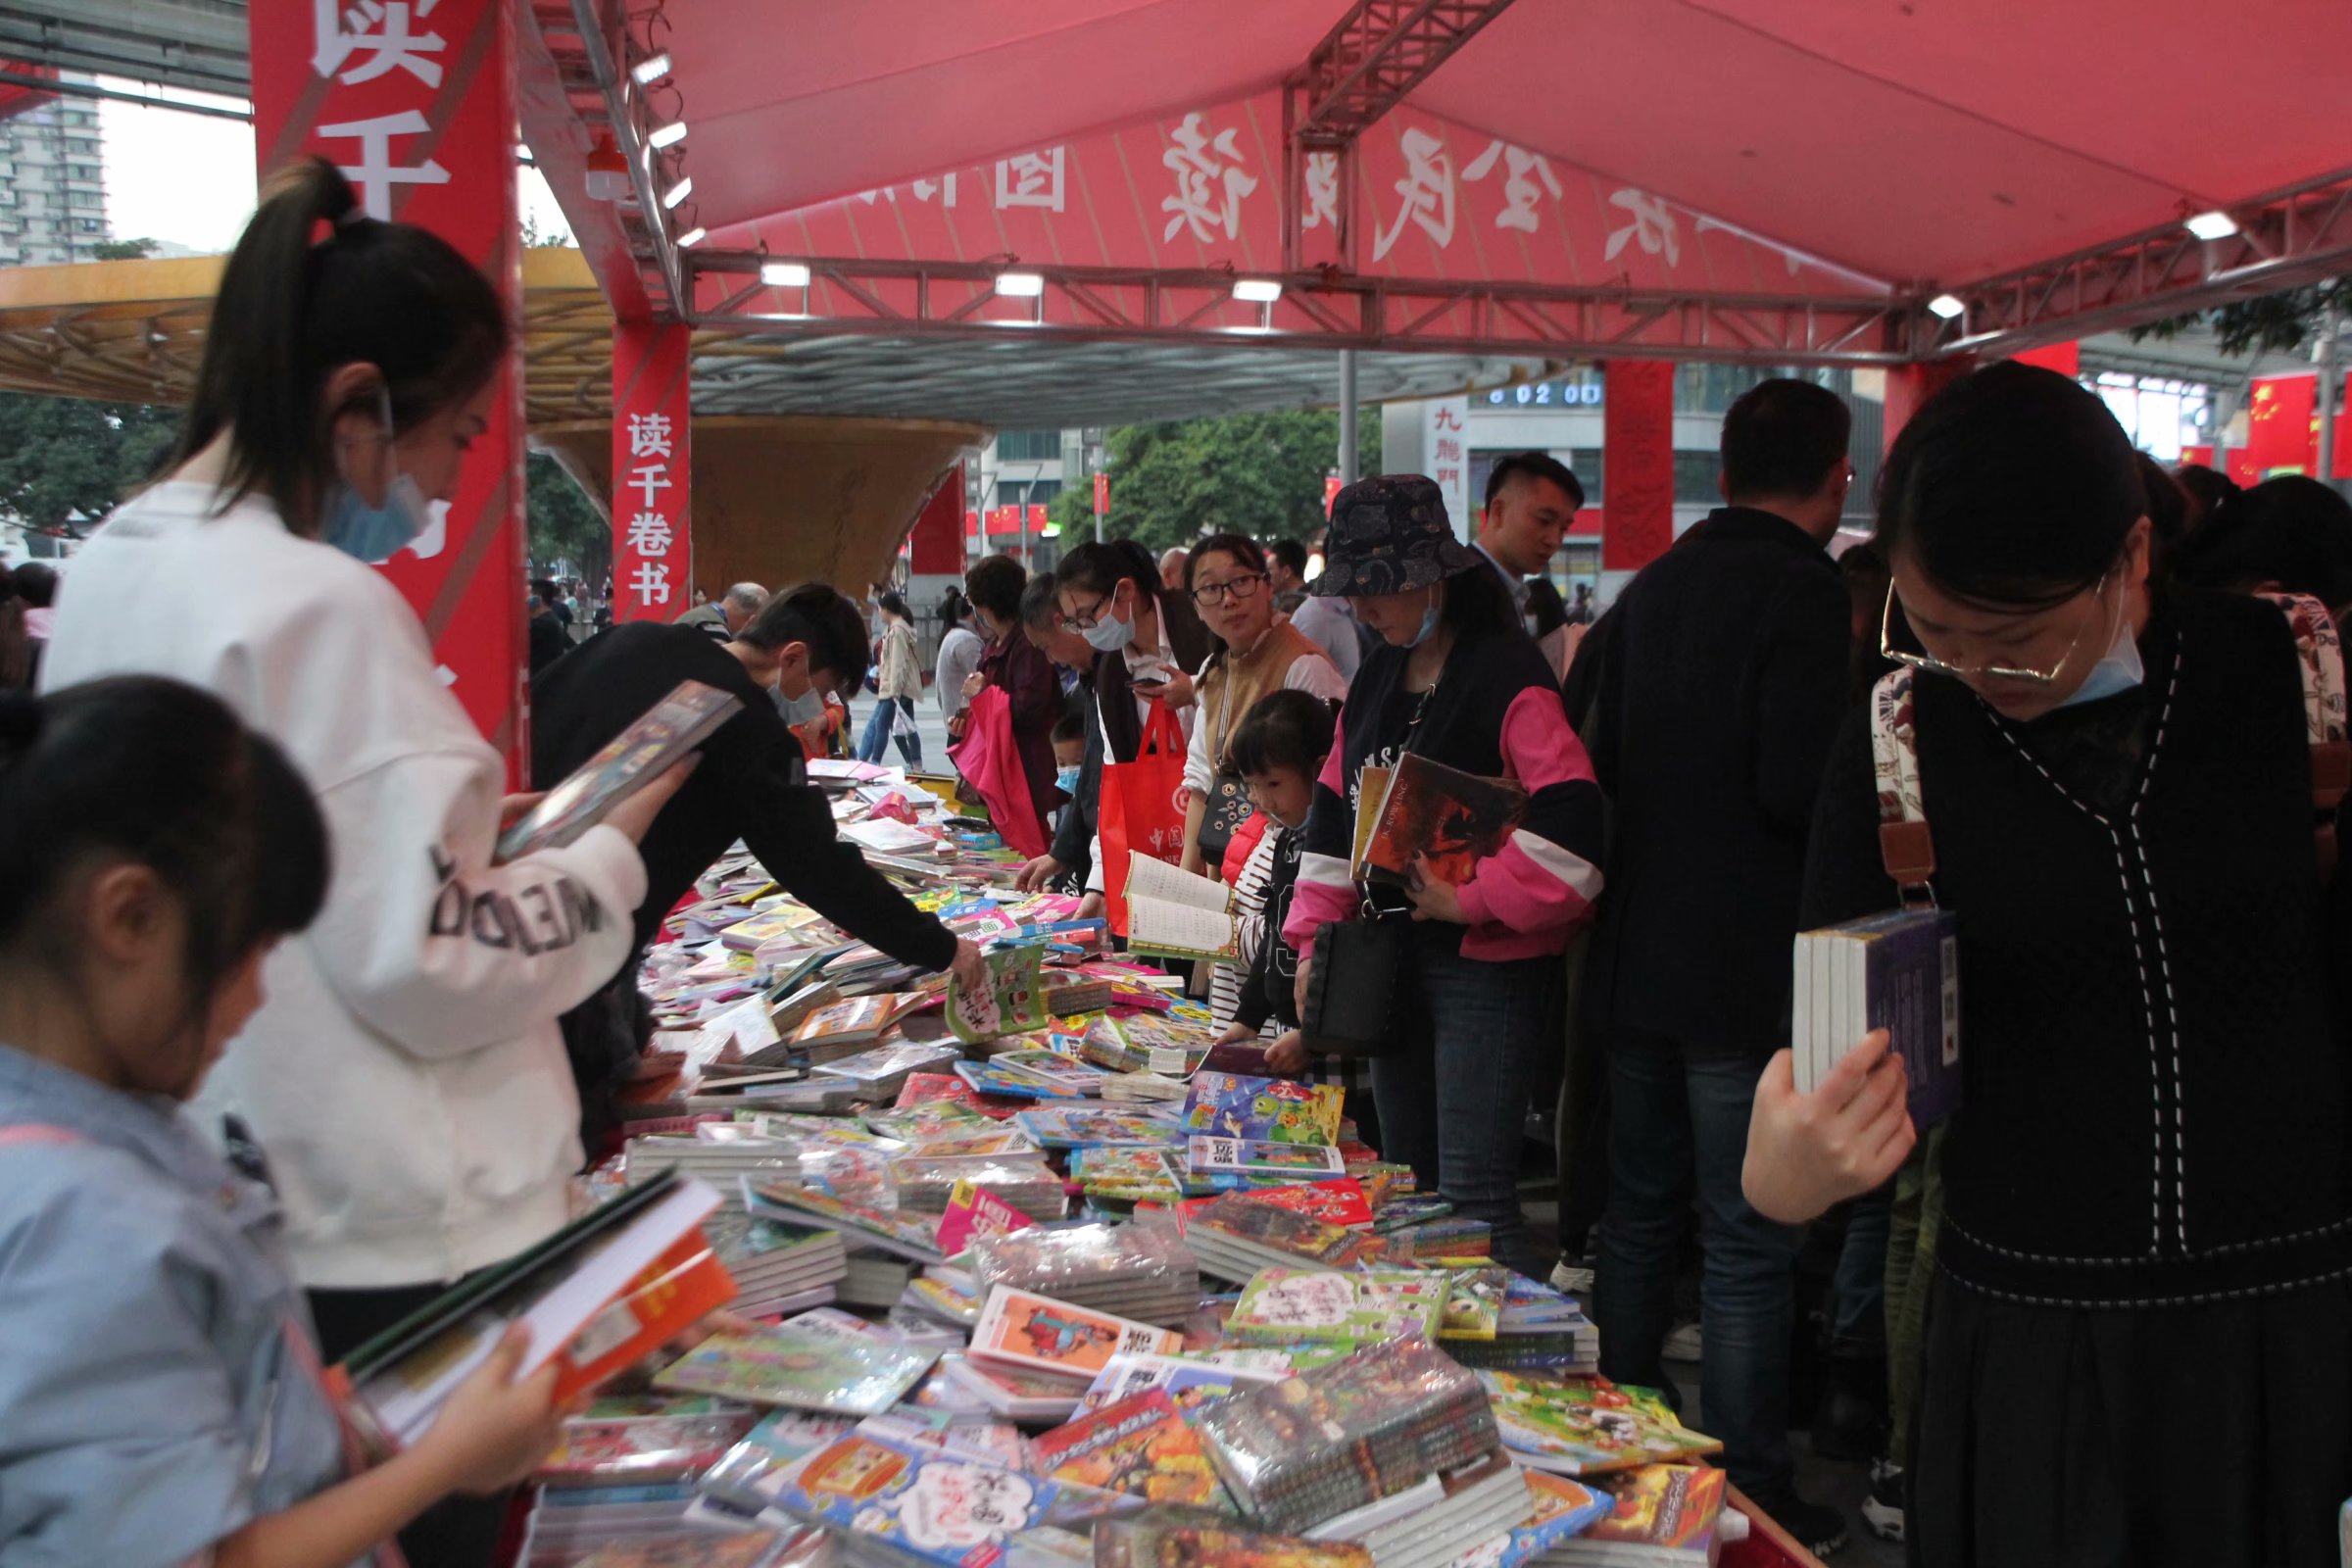 重庆街头书摊论斤卖书读者笑称比大型书店便宜多了